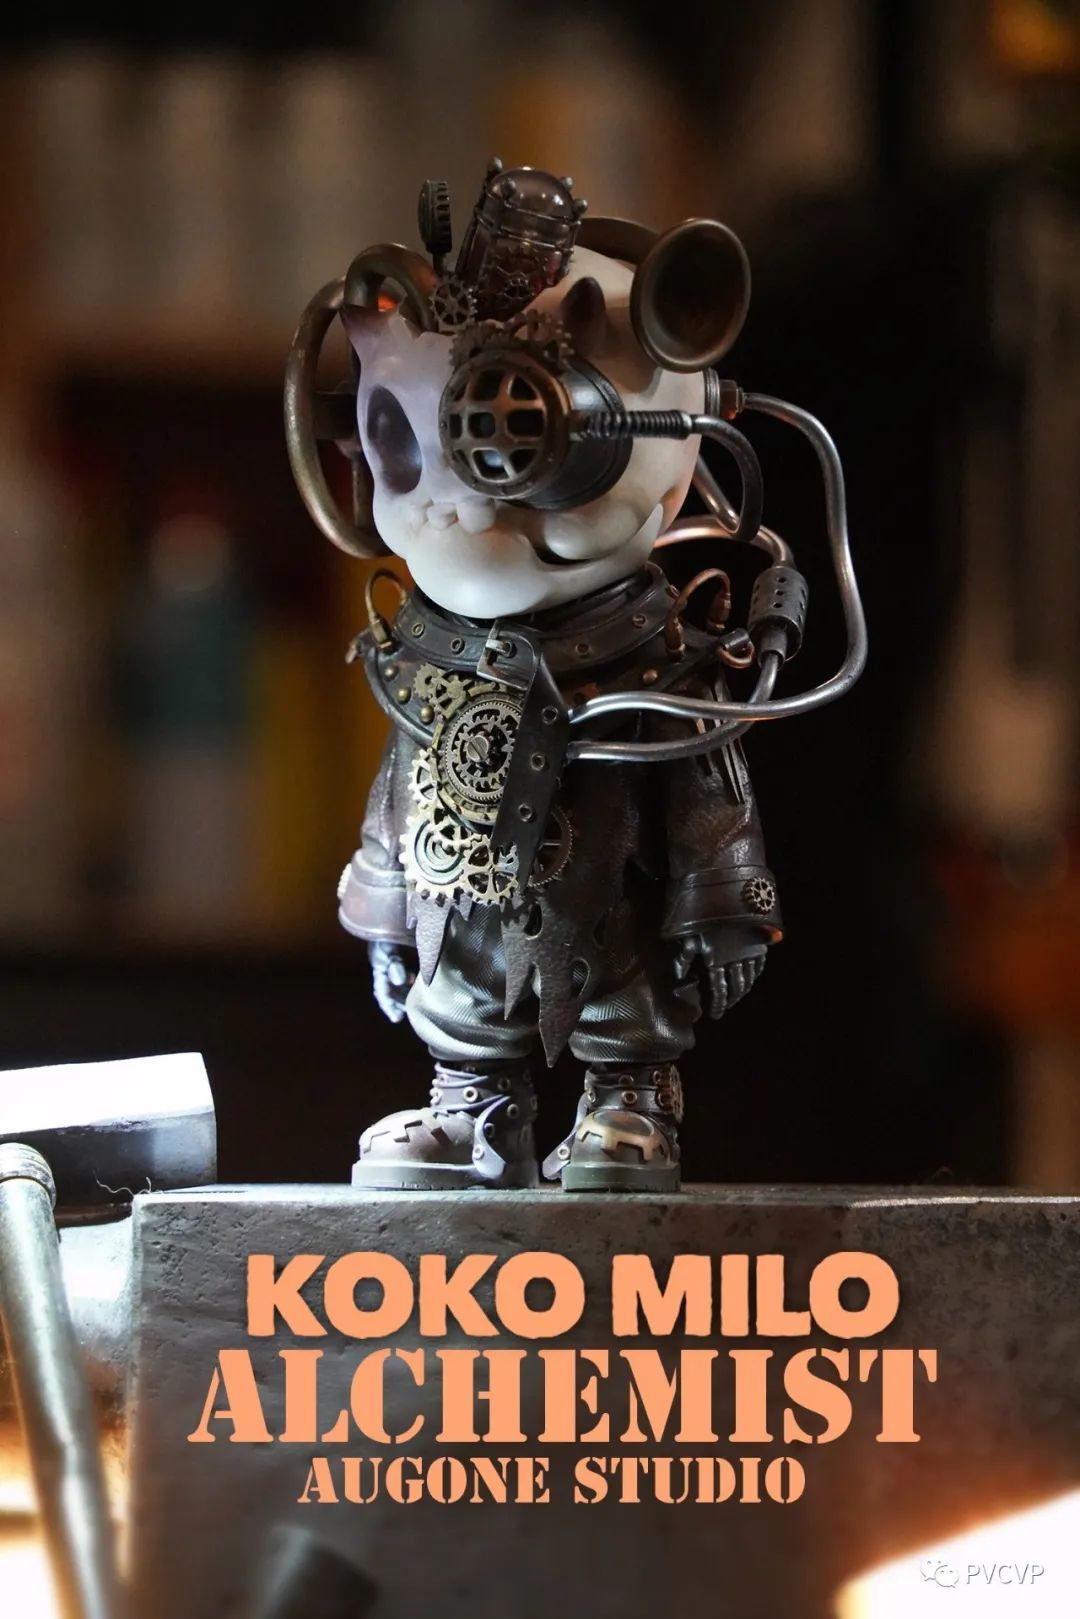 战争与和平，骷髅与生命，KOKO MILO维和小兵机械骷髅潮玩公开！